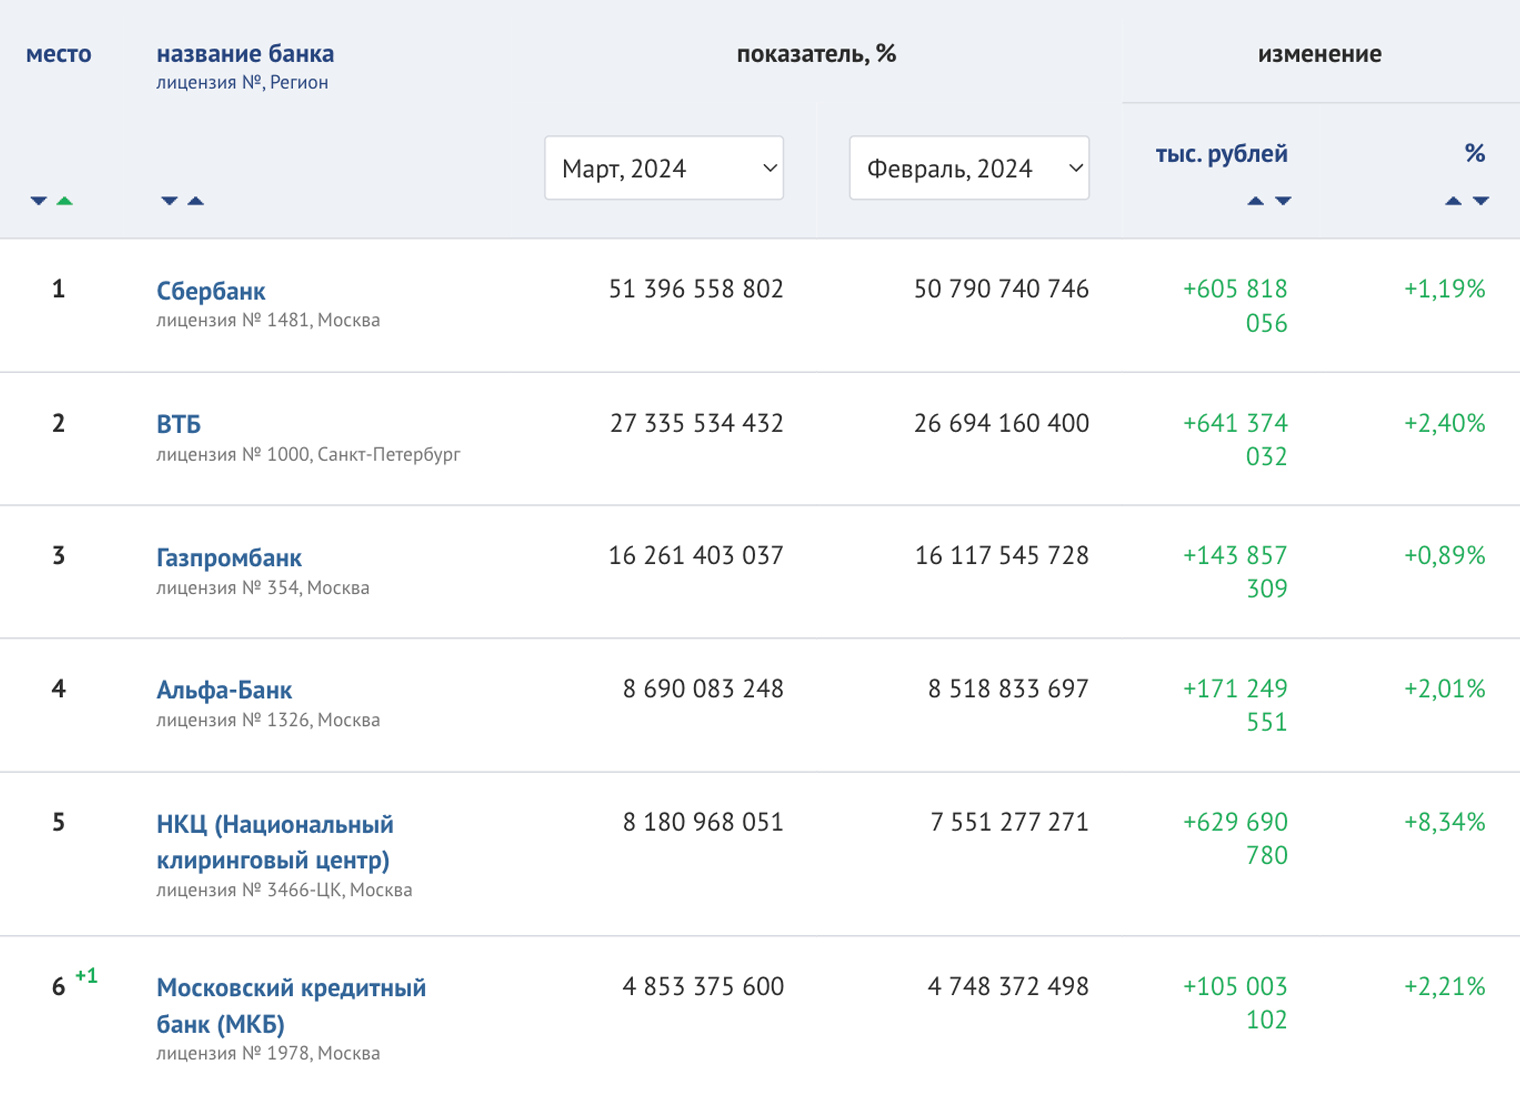 Рейтинг банков по активам нетто от портала «Банки⁠-⁠ру»